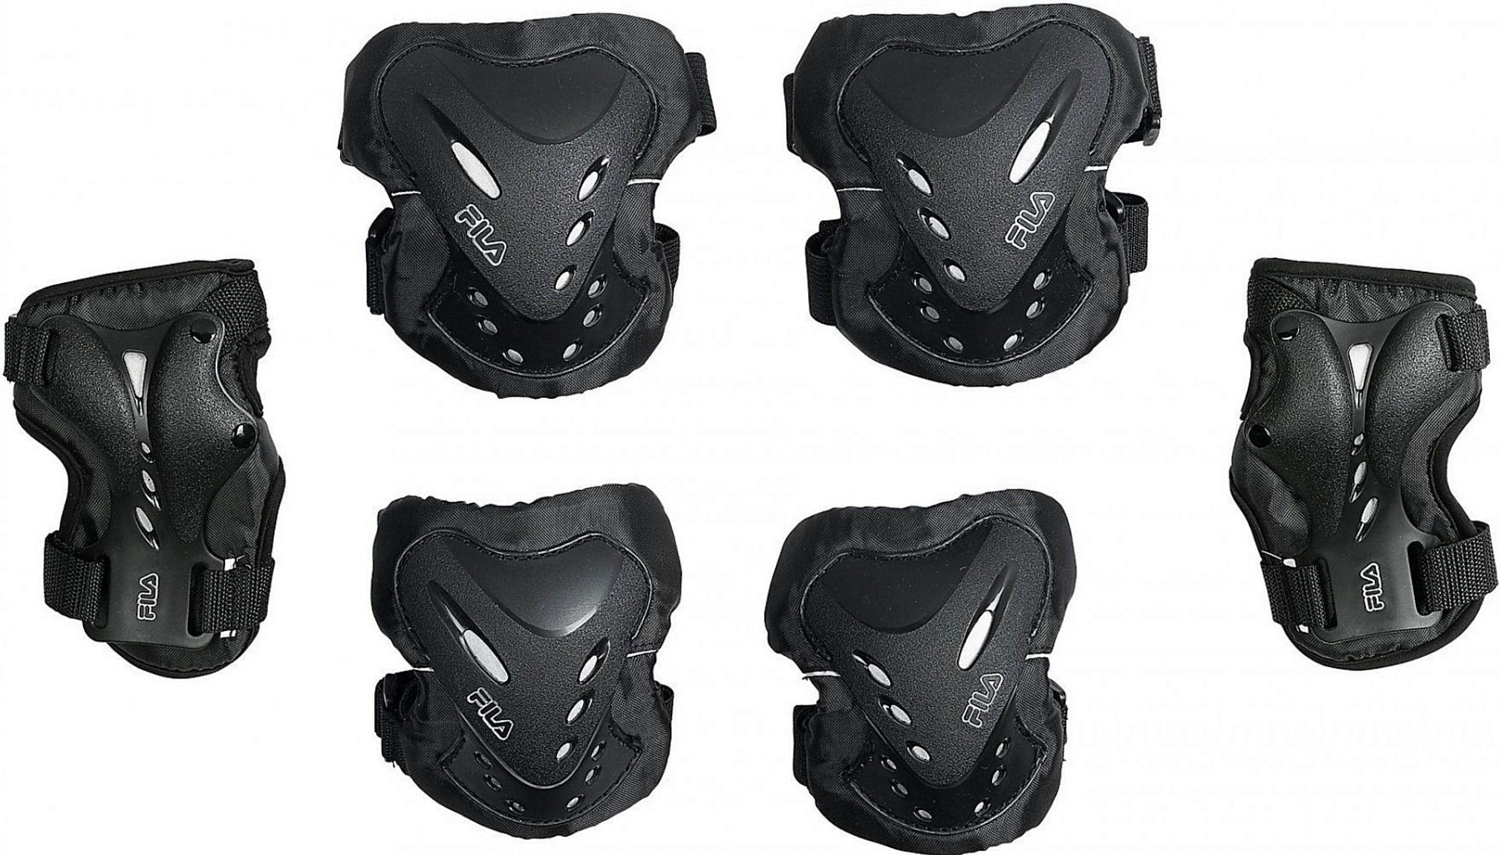 Комплект защиты Fila Fila Fila Fp Gear (колени локти запястья) Black/Silver